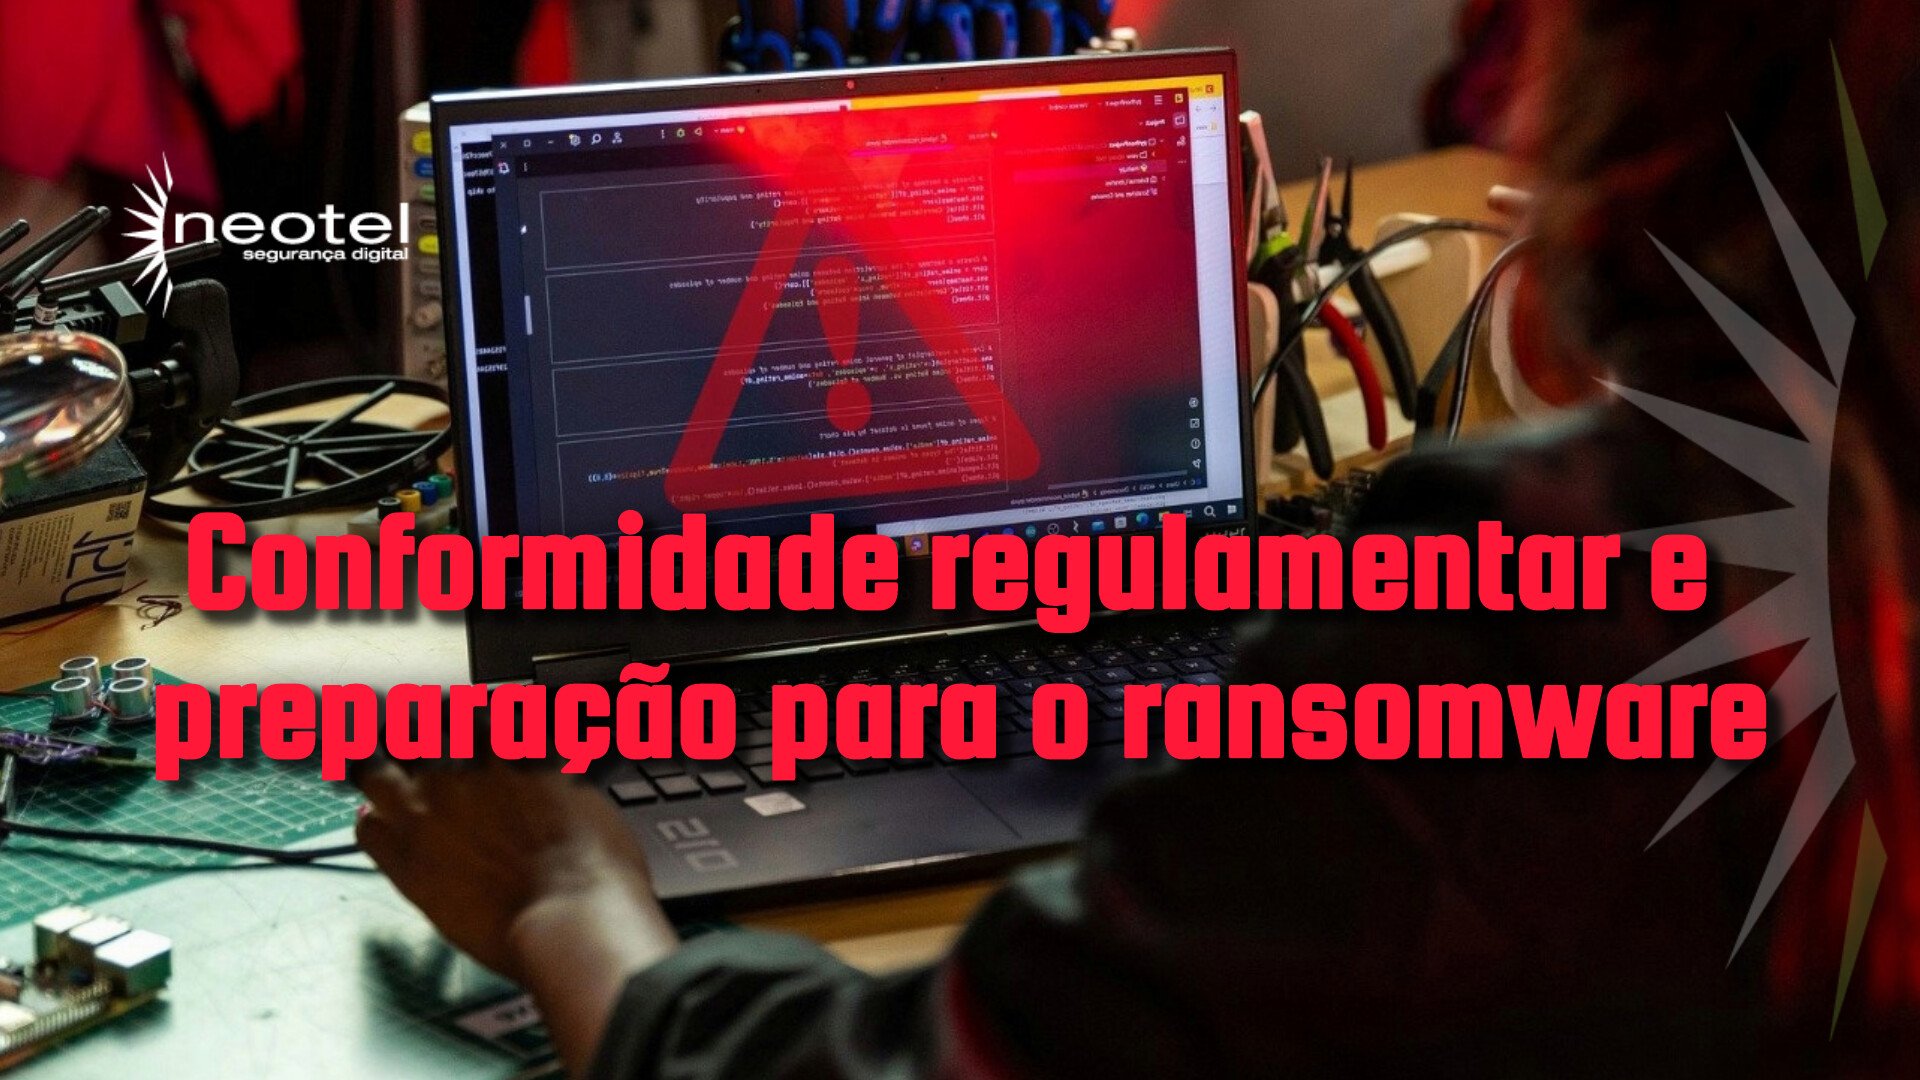 Conformidade regulamentar e preparação para o ransomware